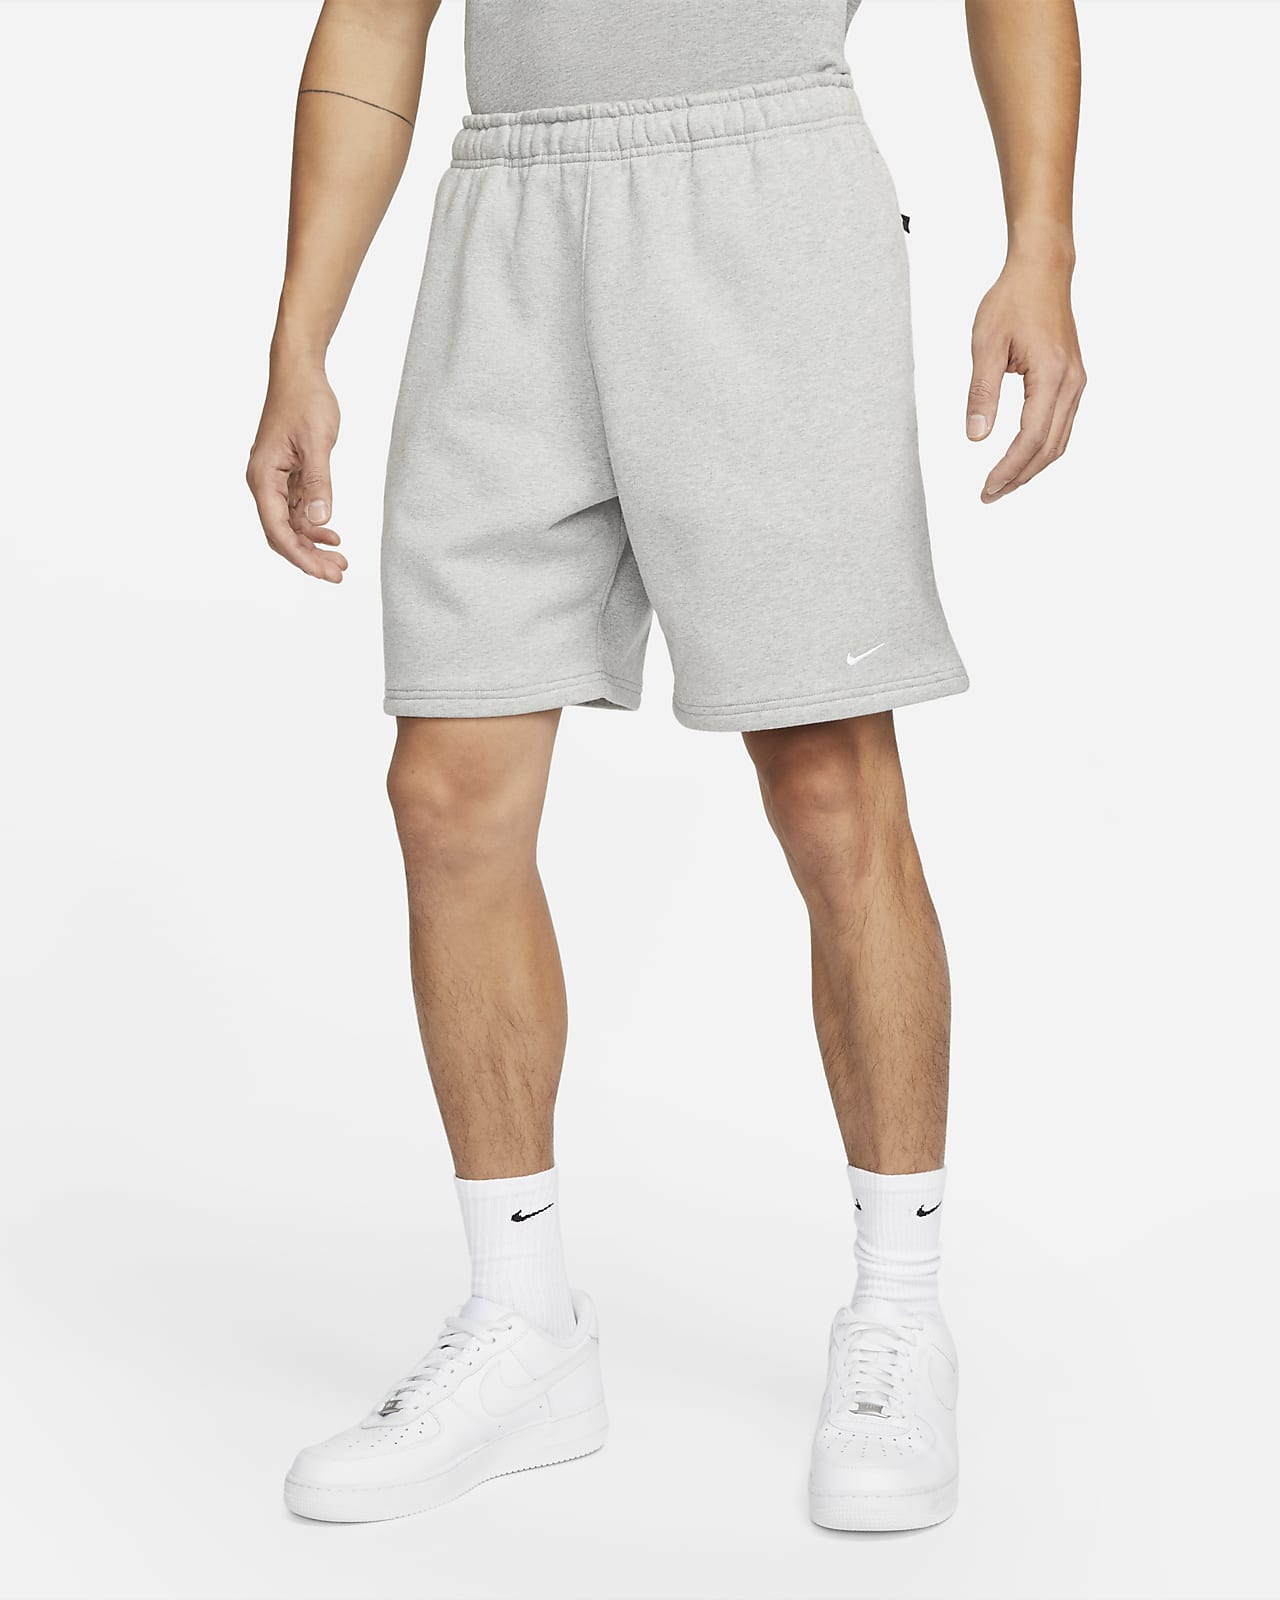 Nike Solo Swoosh Fleece 短褲